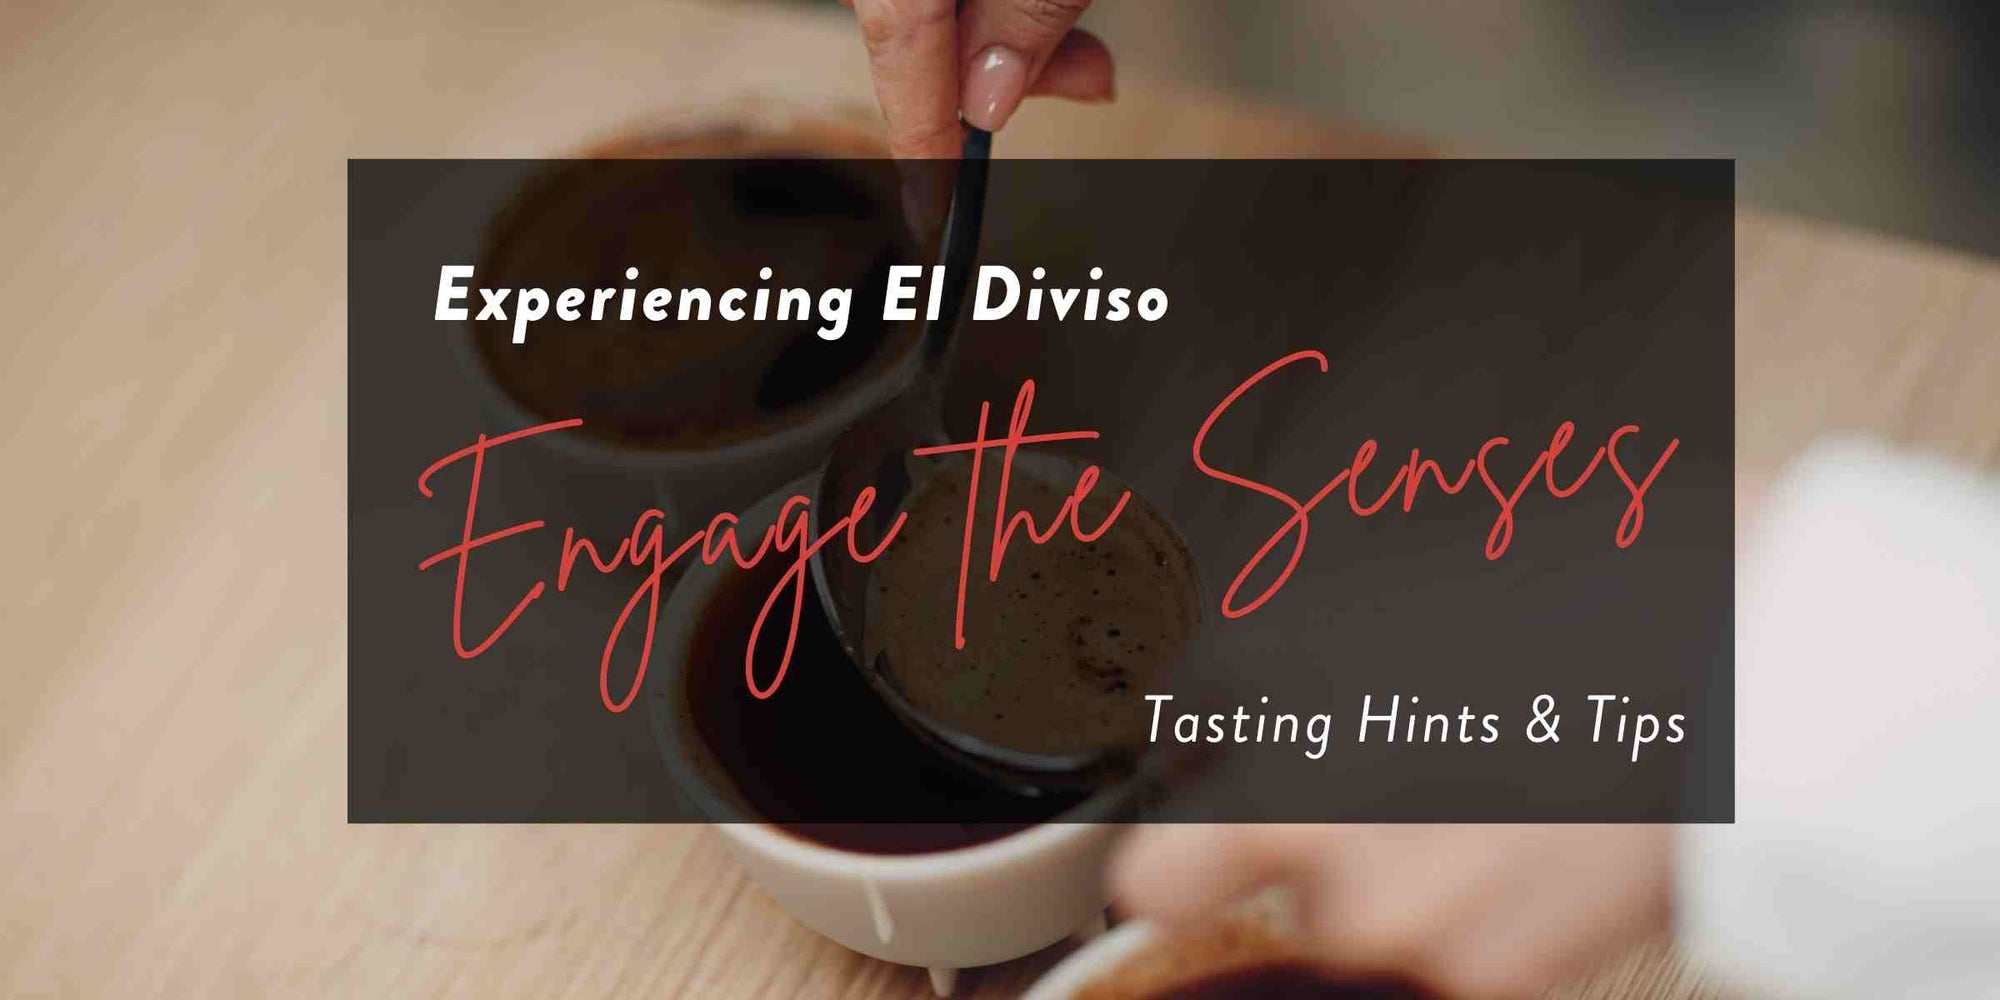 Enhance your El Diviso Coffee Flight experience